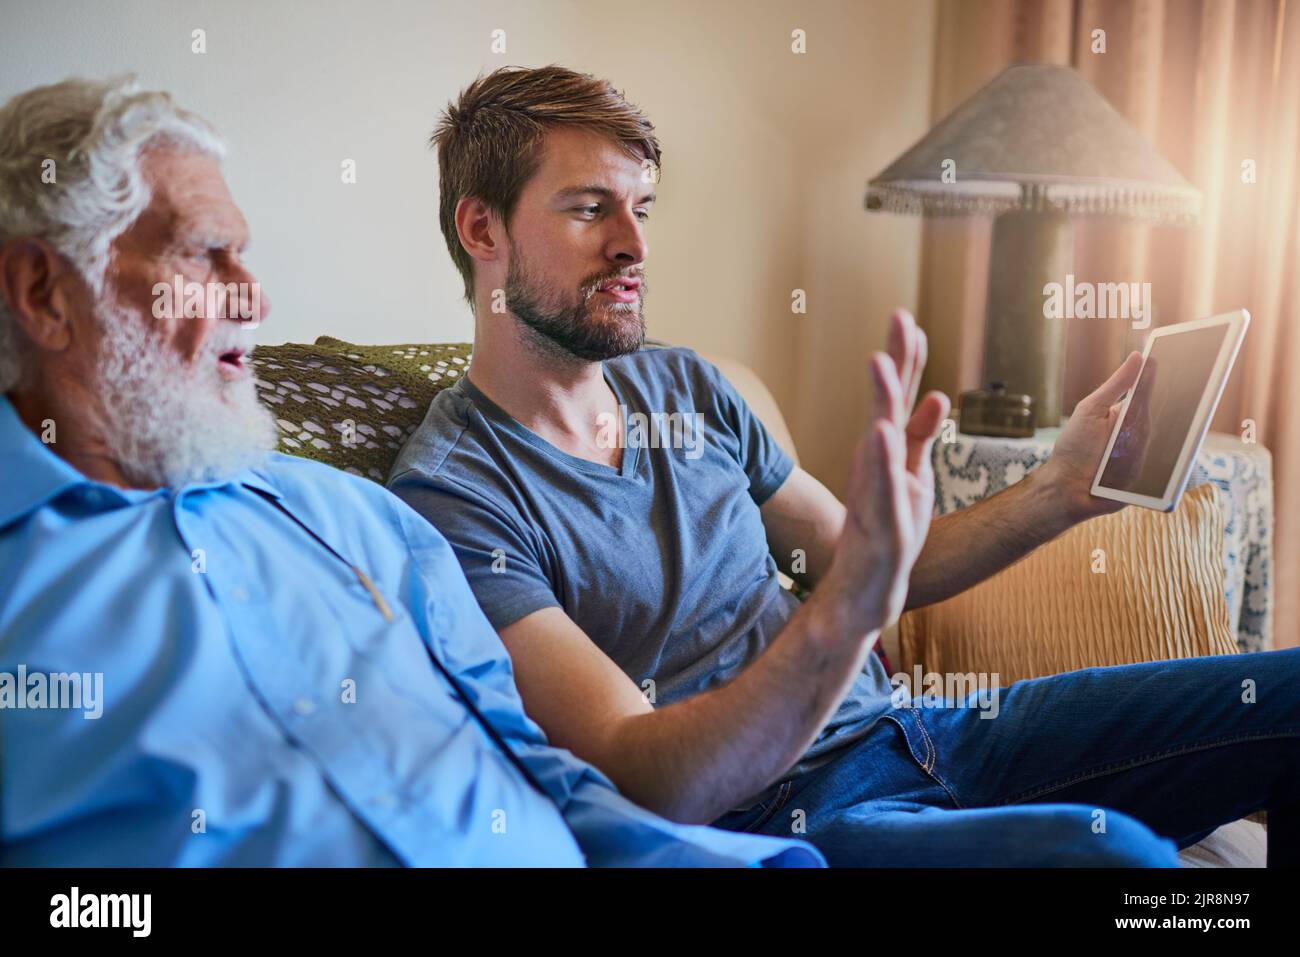 Du wirst soziale Medien lieben. Ein junger Mann zeigt seinem älteren Großvater, wie man ein Tablet benutzt, während er zu Hause auf der Couch sitzt. Stockfoto